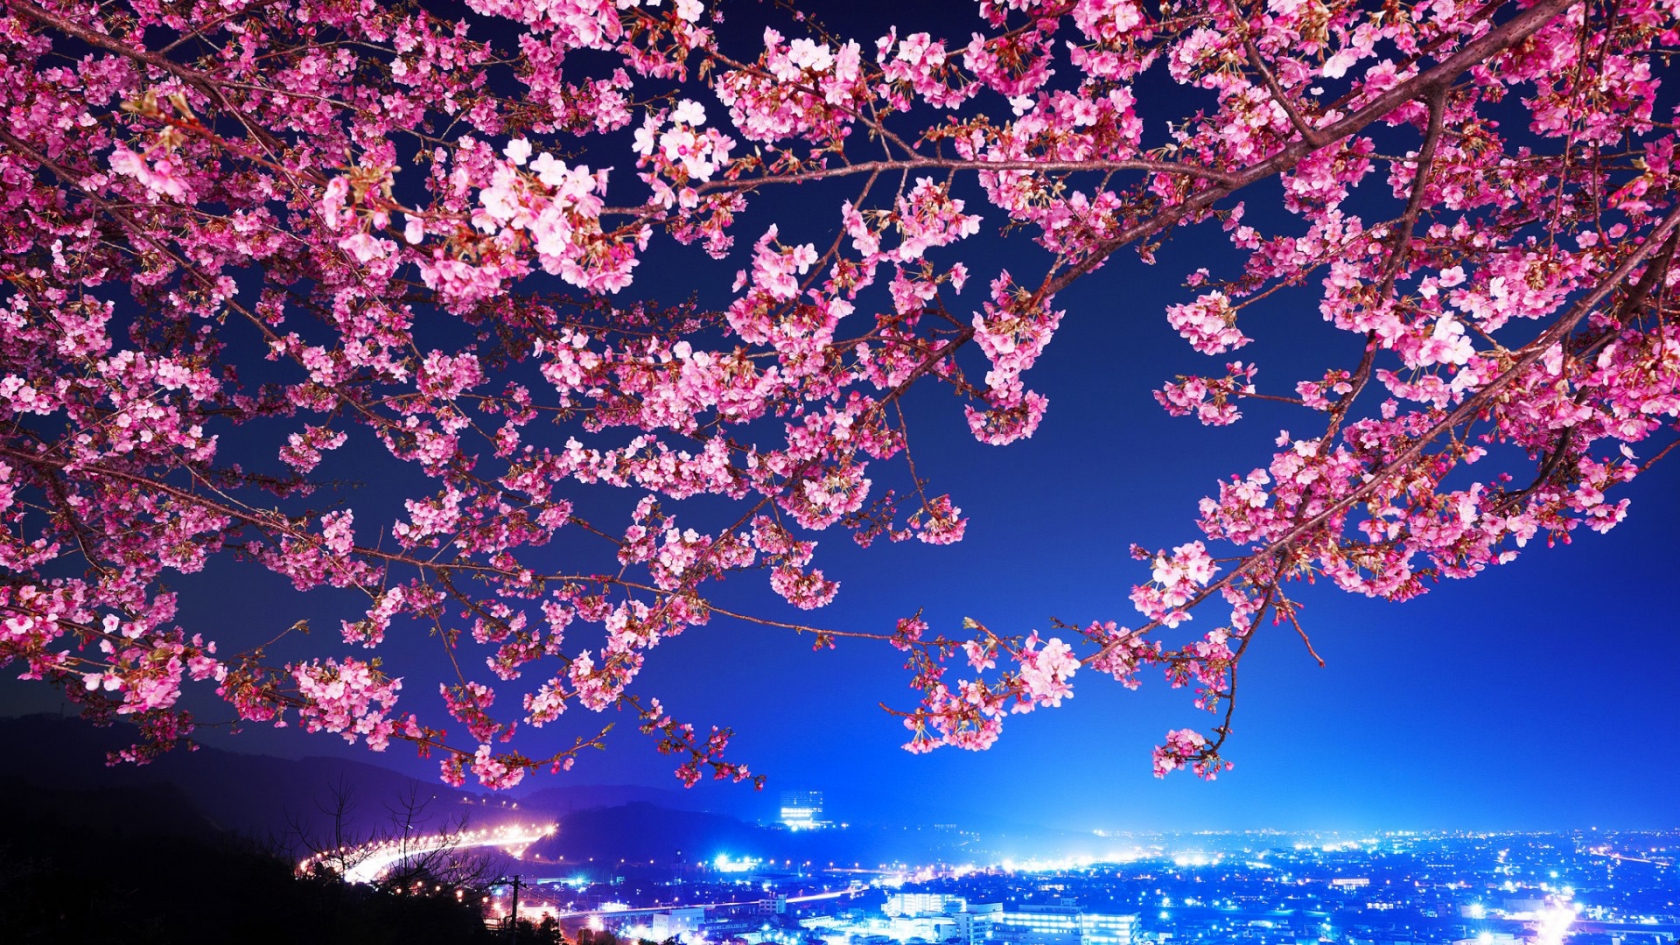 Lovely Cherry Blossom for 1680 x 945 HDTV resolution